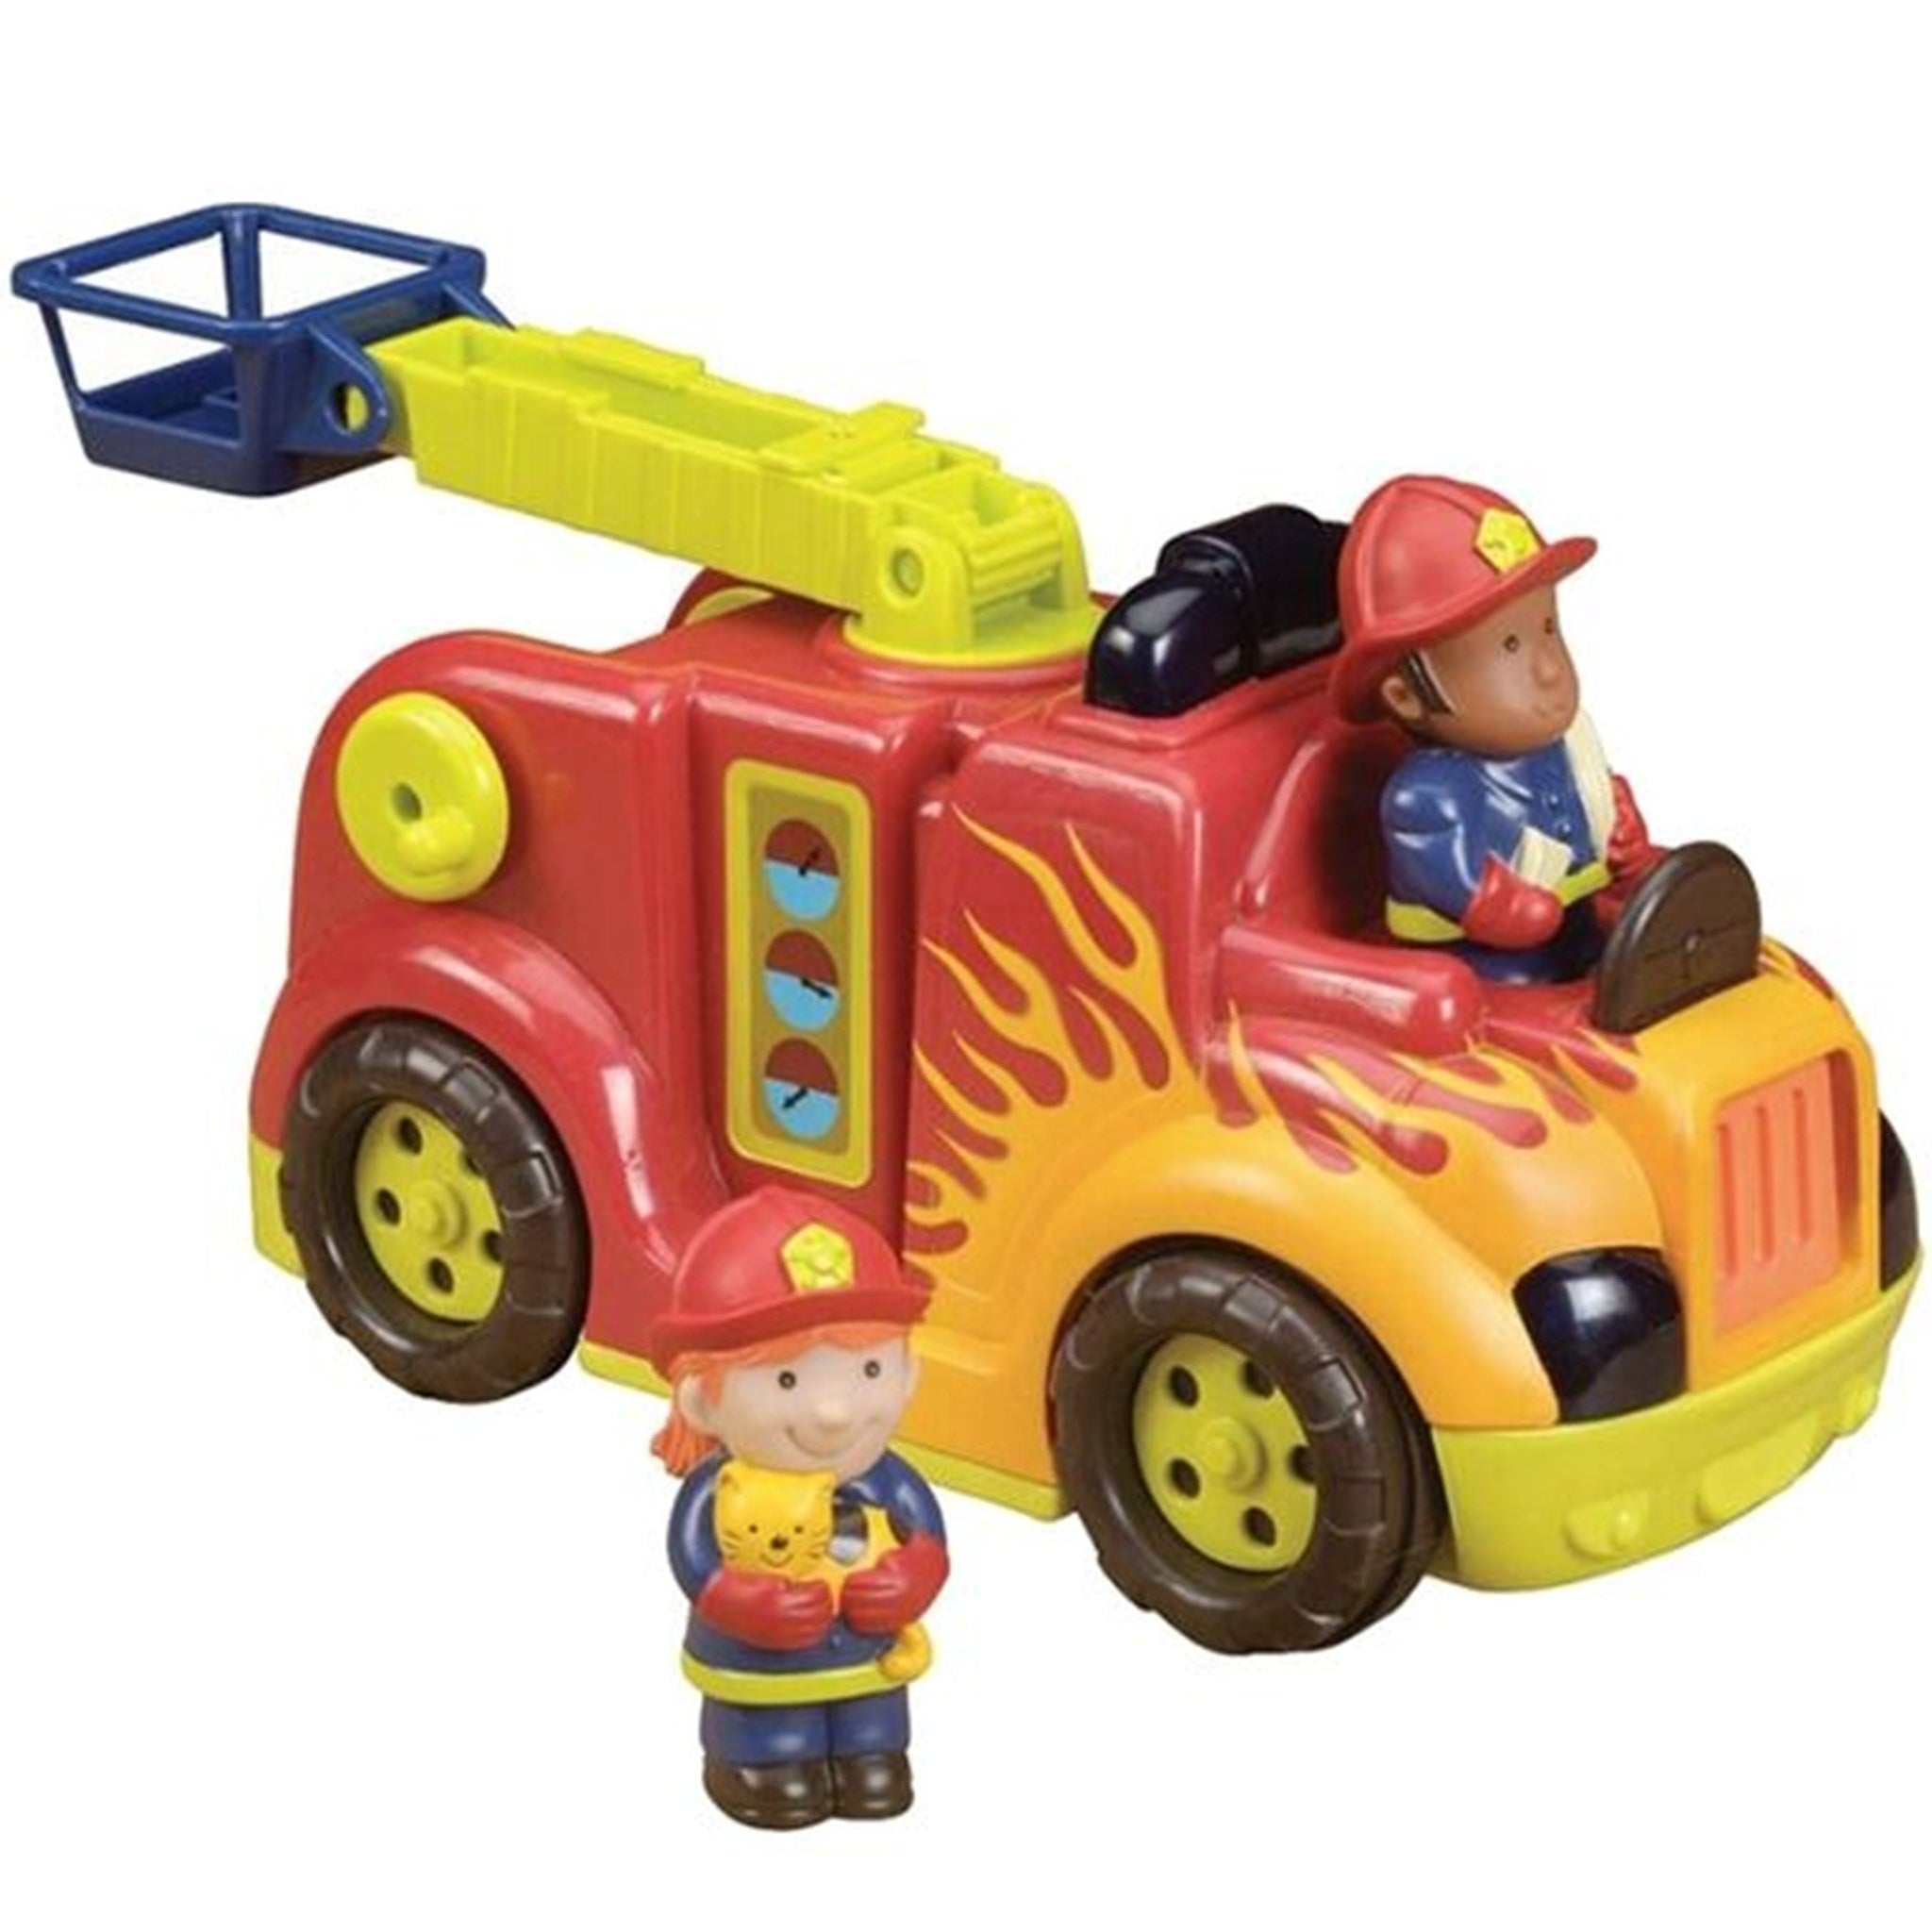 B-toys Fire Truck